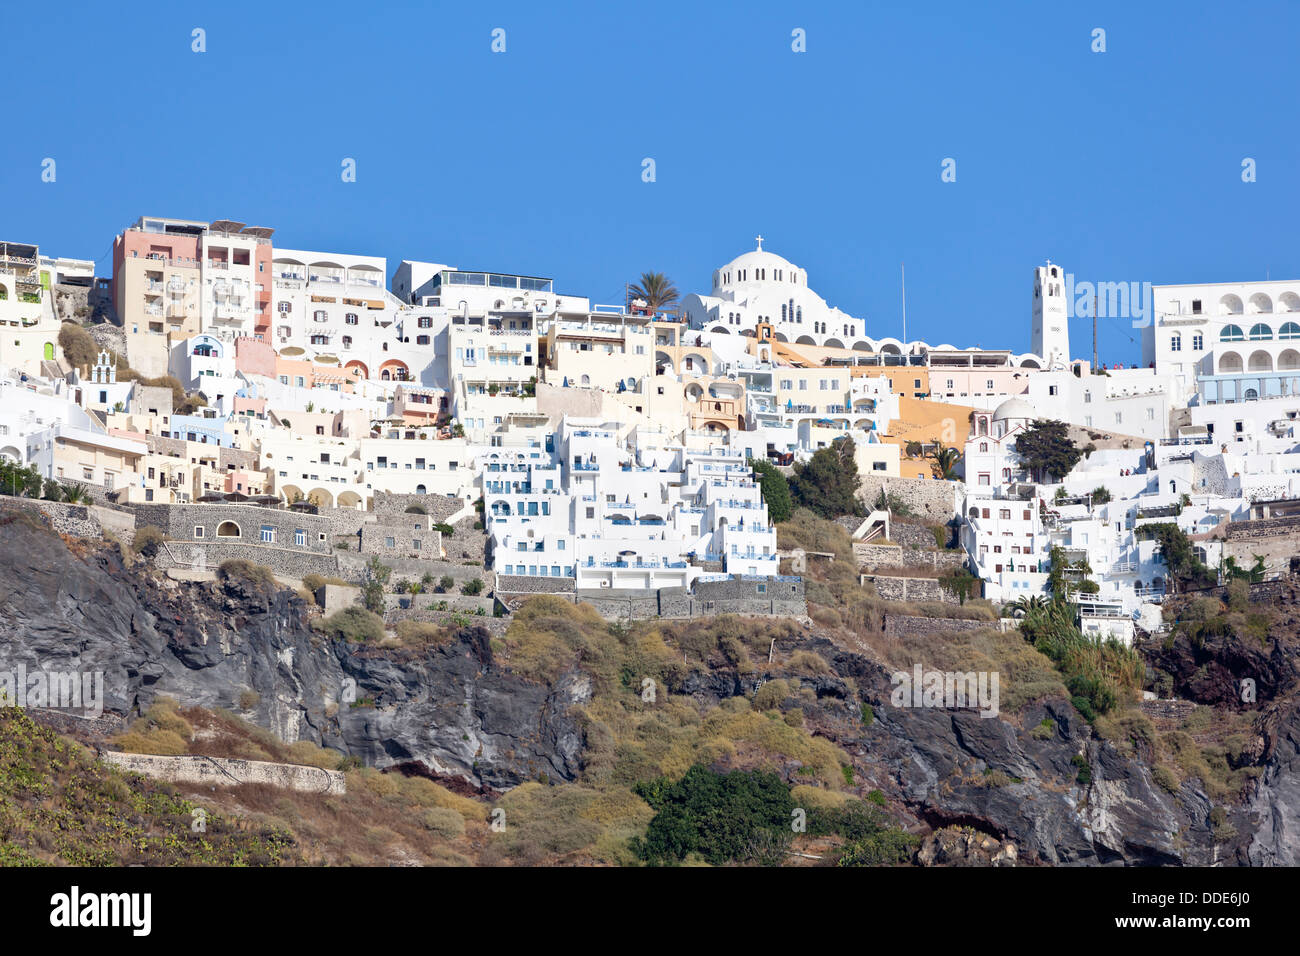 Fira la capitale de Santorin, Grèce vu du niveau de la mer. Banque D'Images